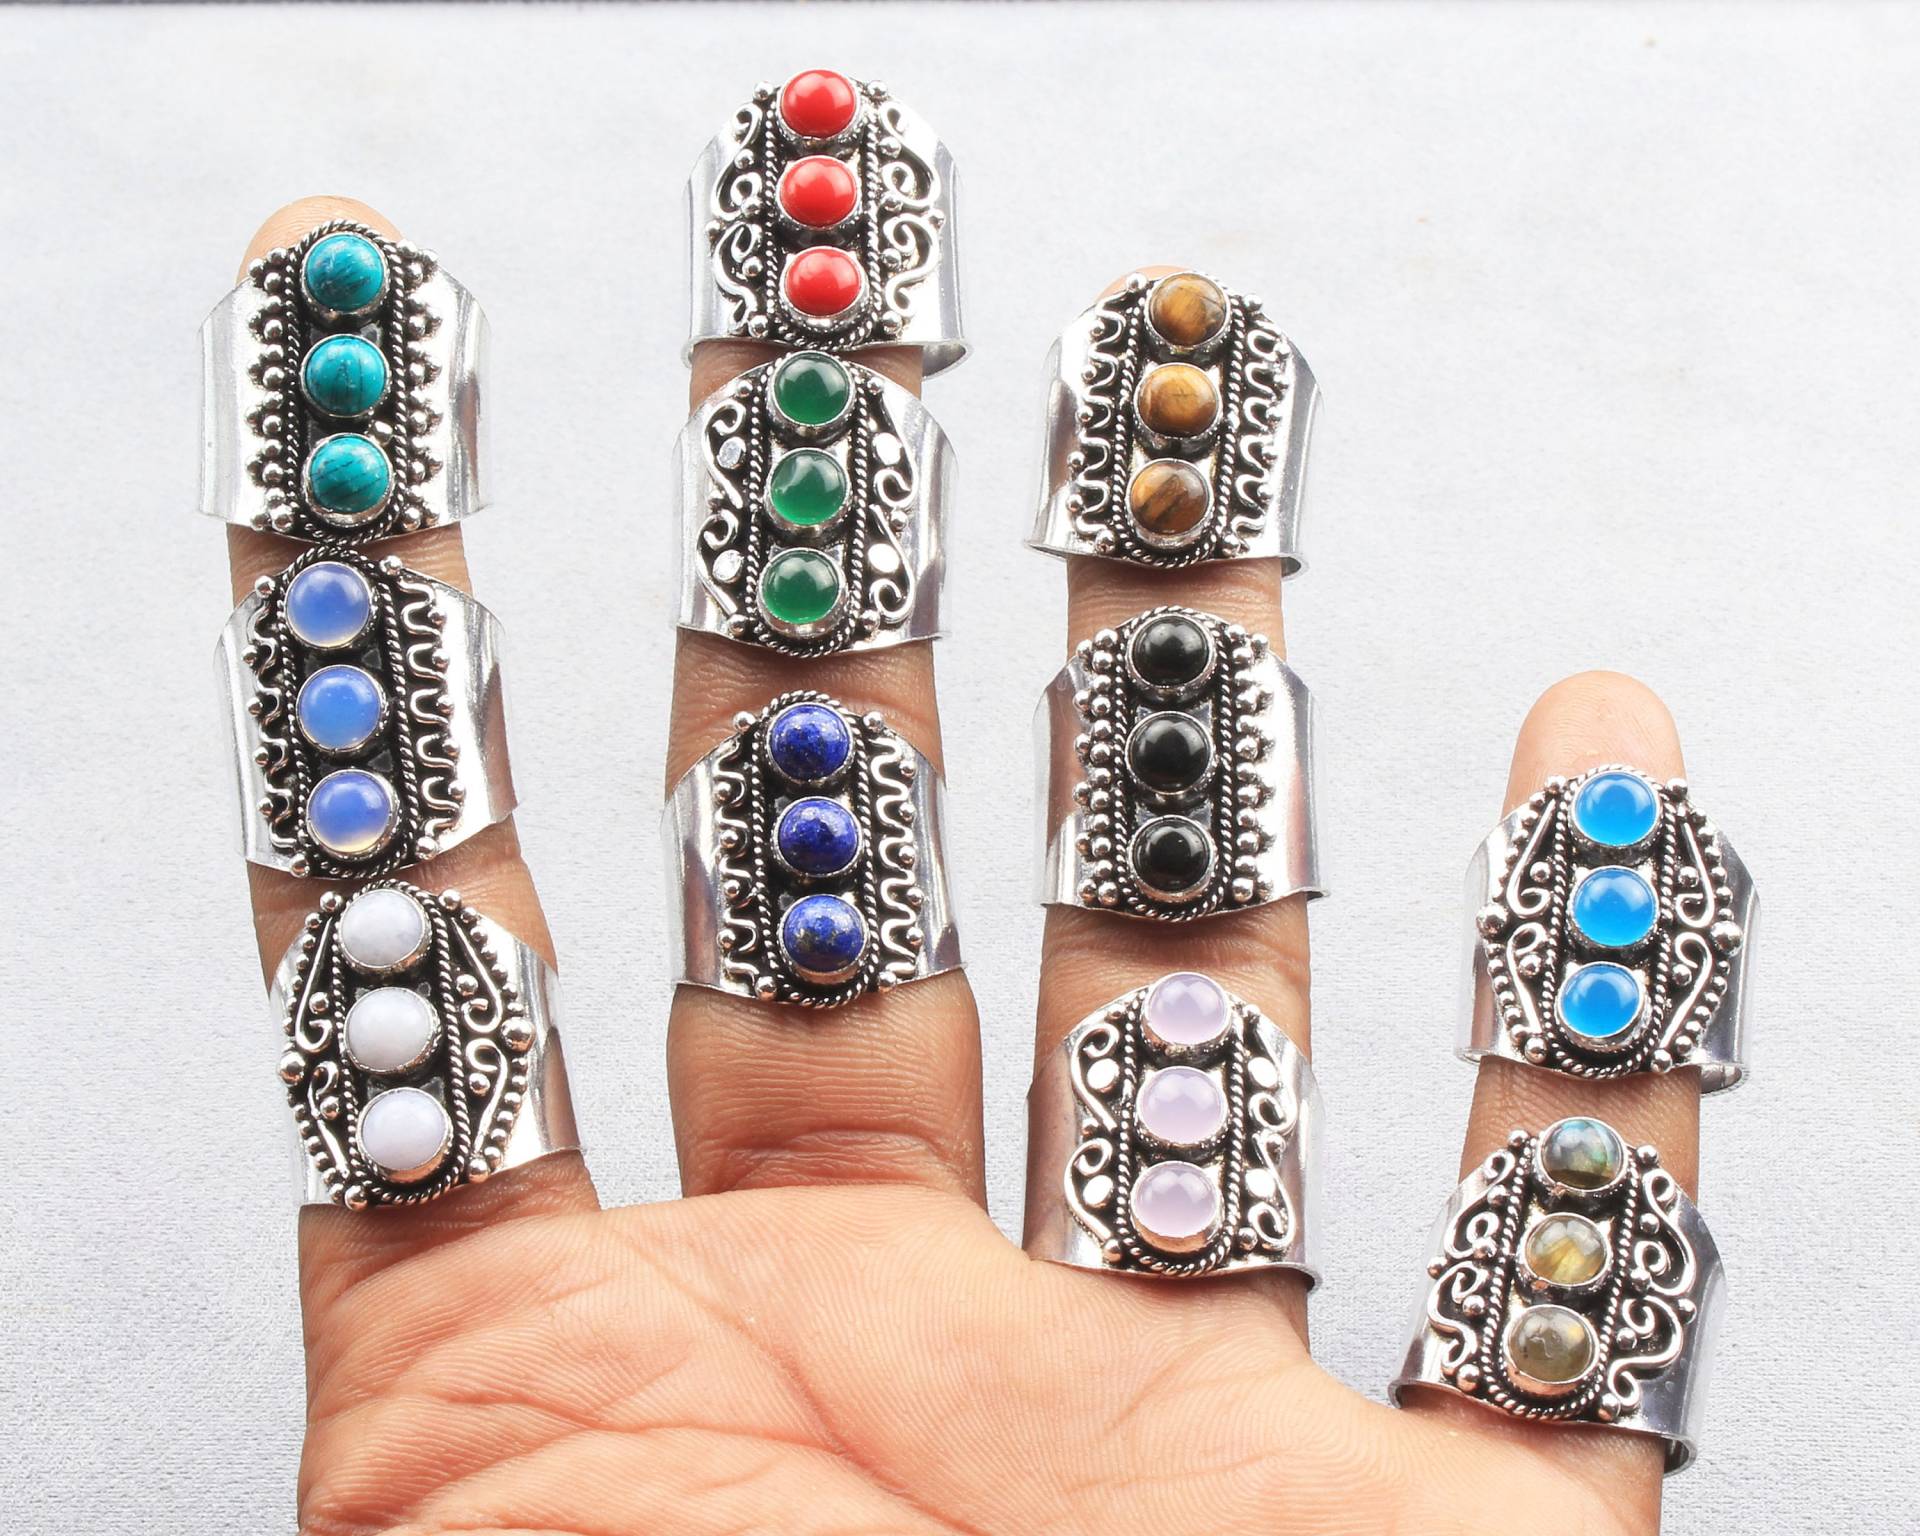 Verstellbarer Ring, Verschiedene Kristall Ringe, Silber Overlay Handgefertigte Hippie Frauen Edelstein Statement Ringe von KirtiGlobal